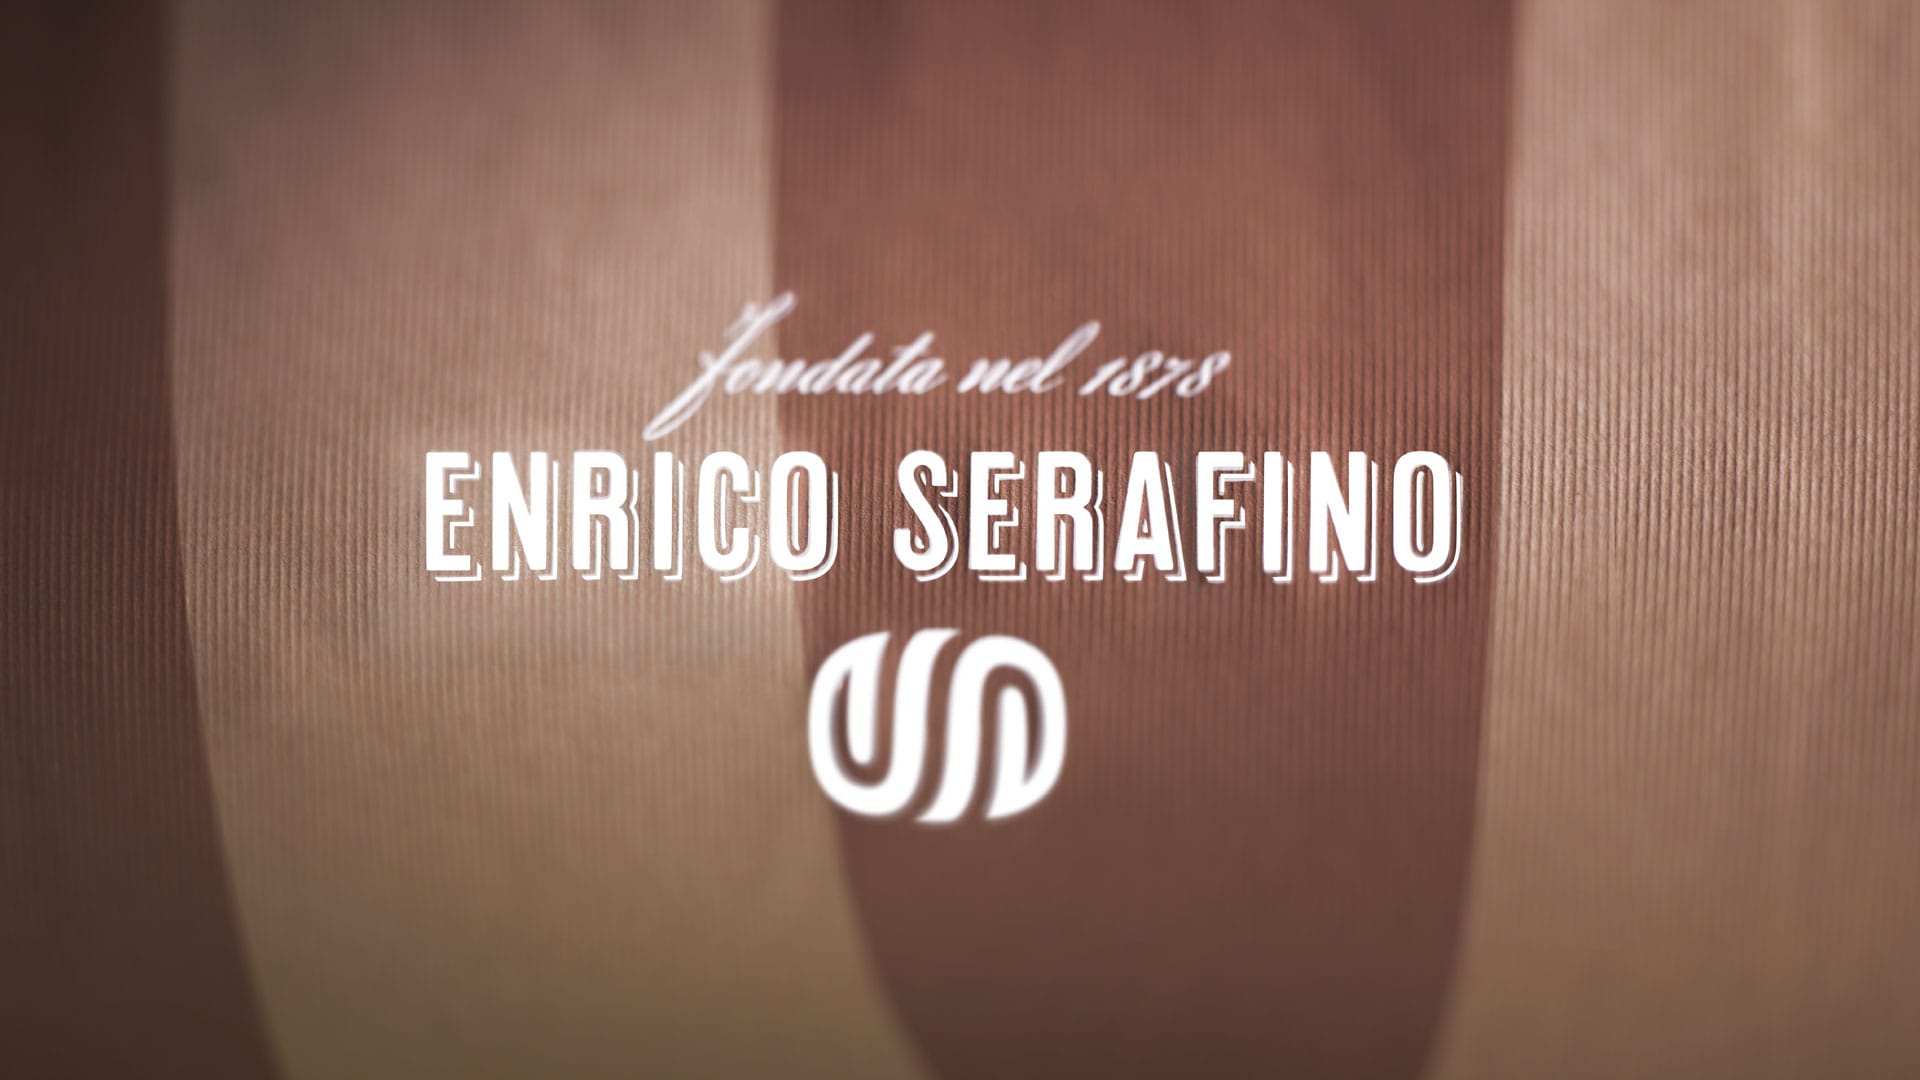 Enrico Serafino applicazione brand 